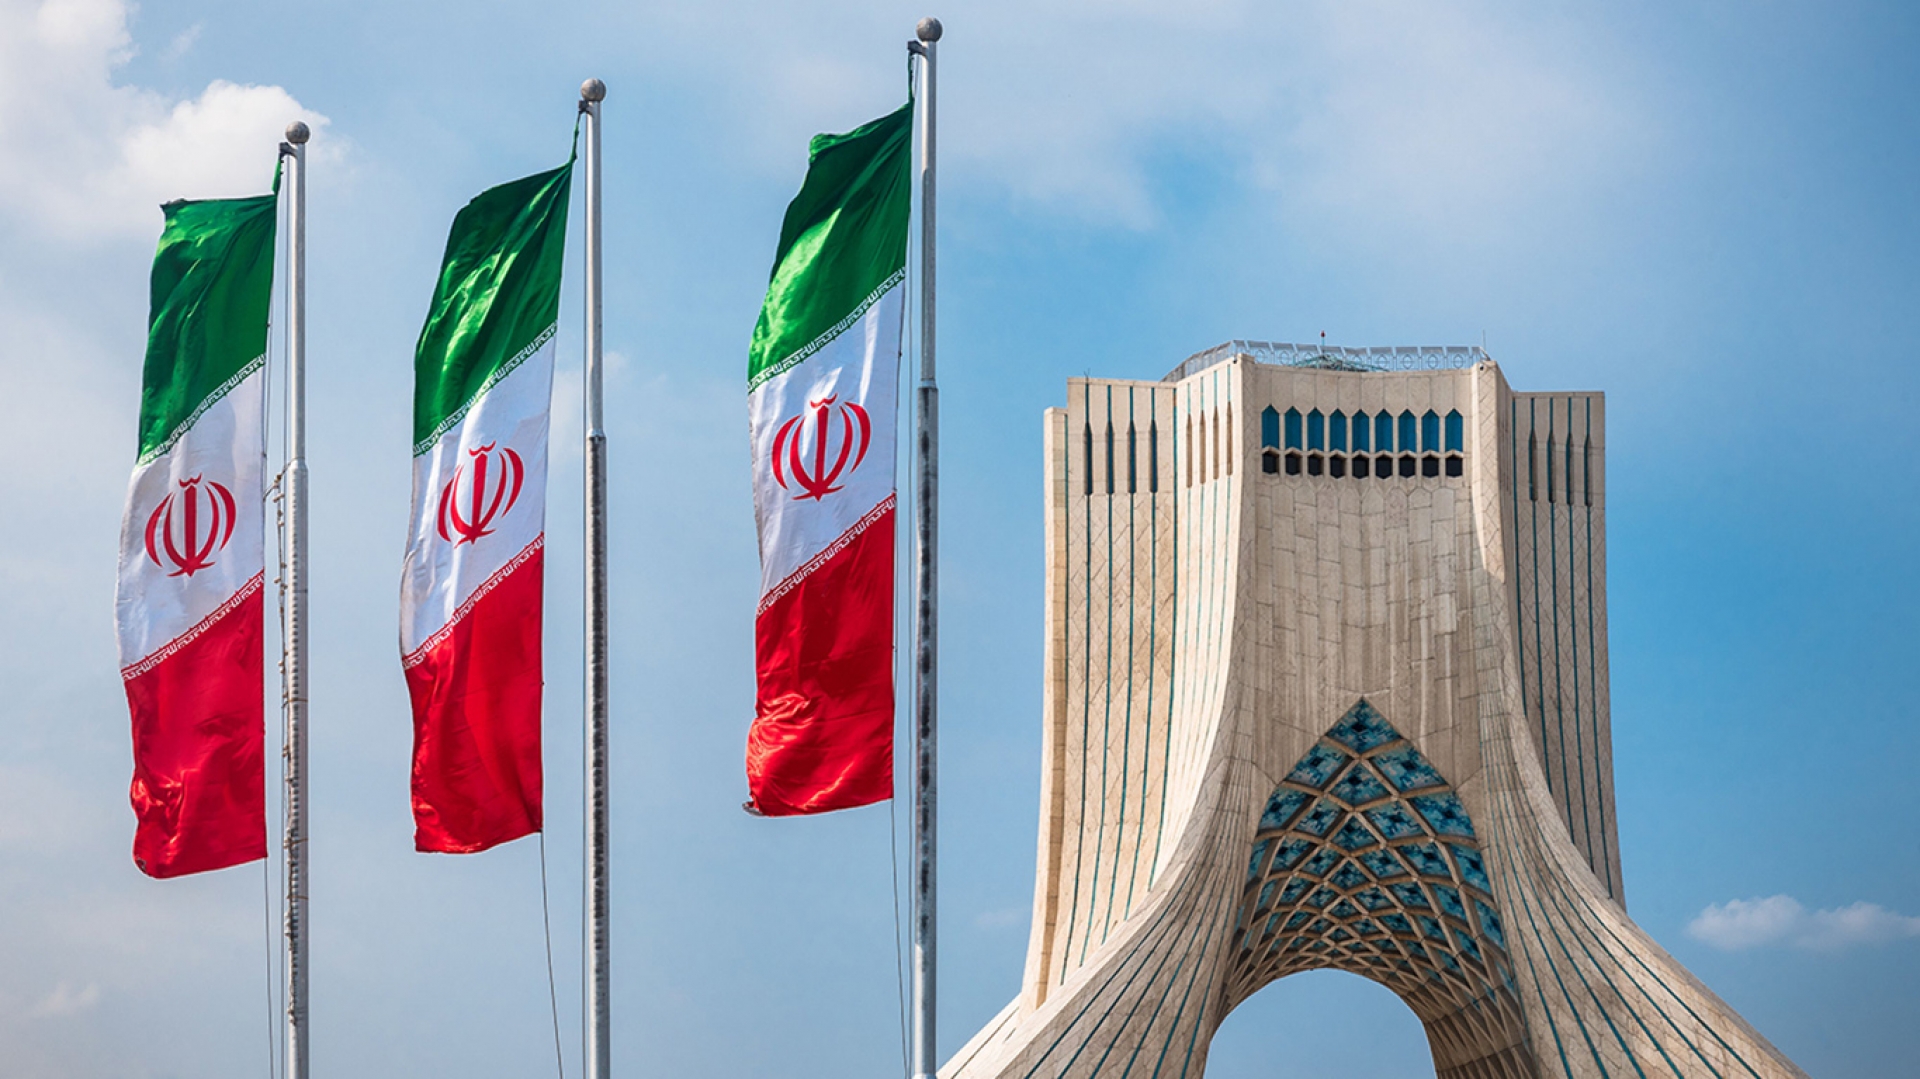 ايران ترفض ازدواجية المعايير الغربية